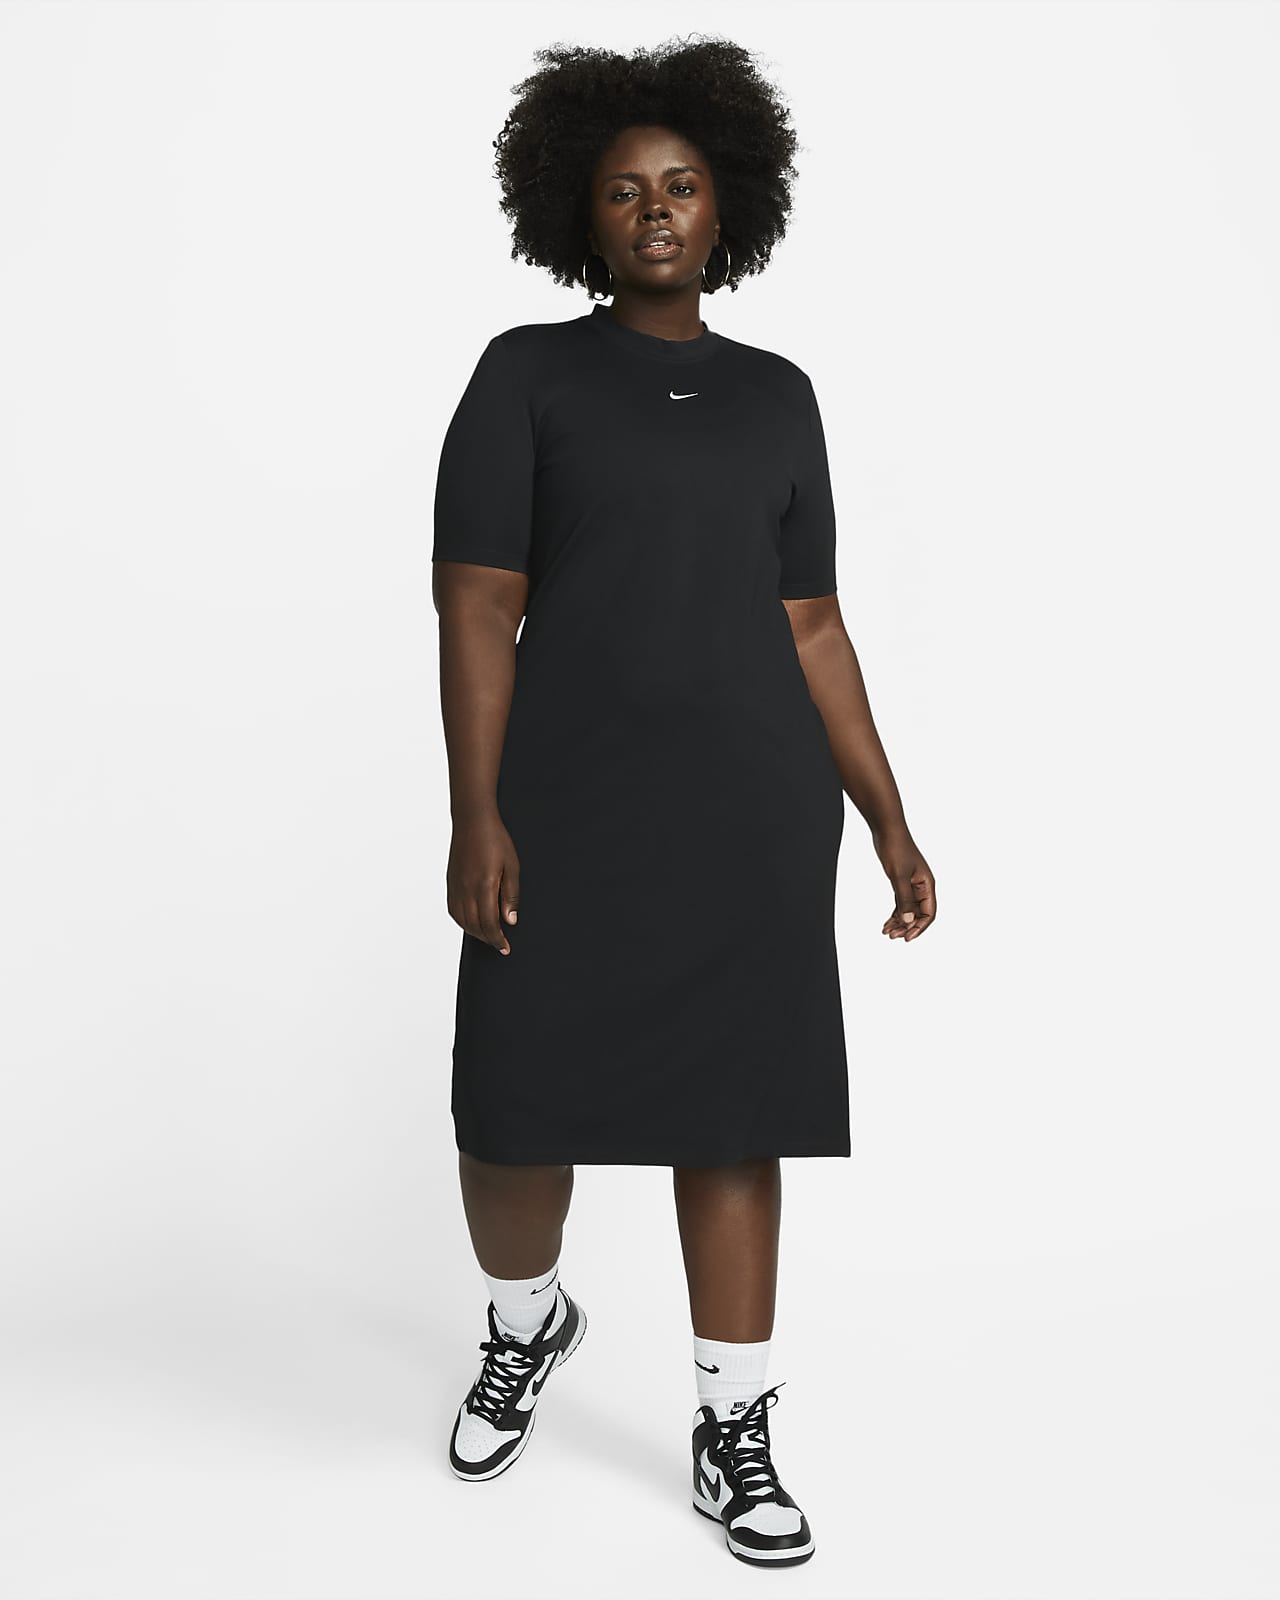 Γυναικείο φόρεμα μίντι Nike Sportswear Essential (μεγάλα μεγέθη)